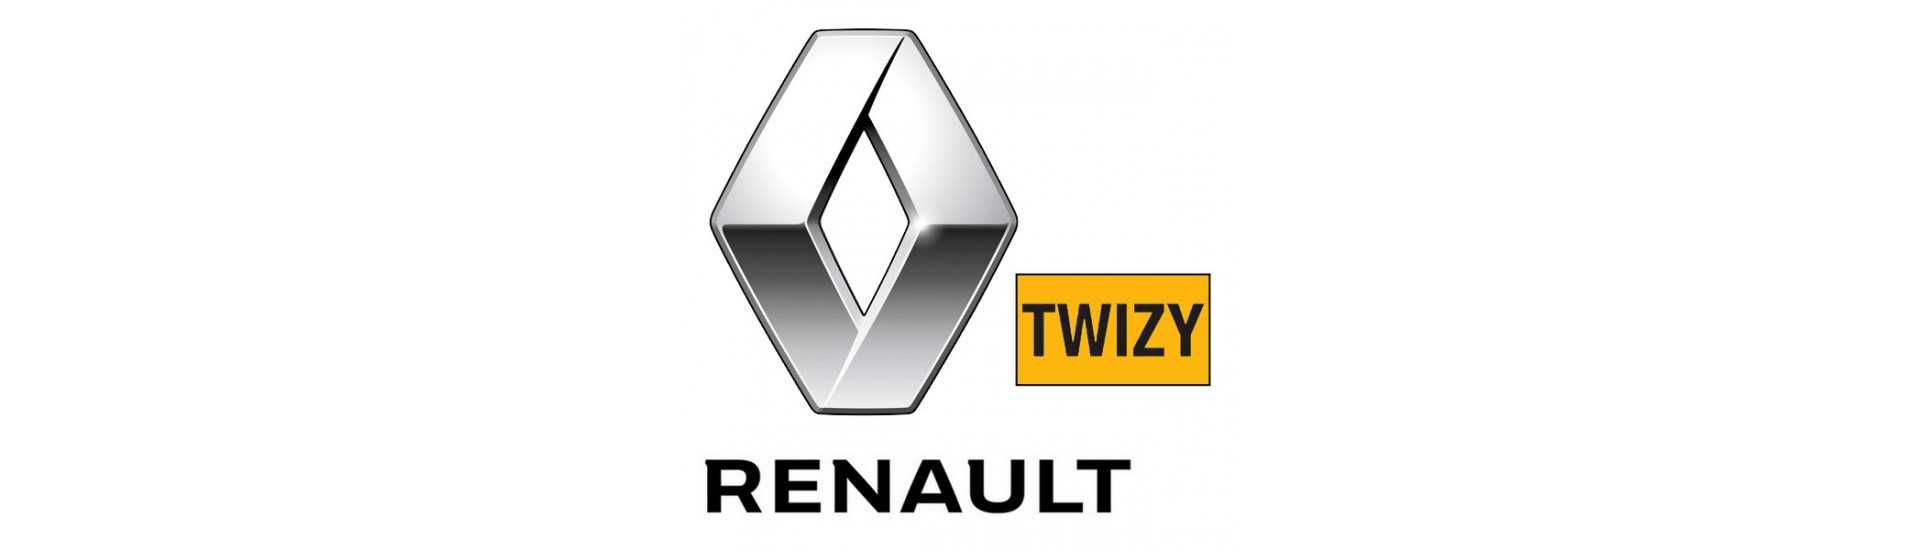 Mango de puerta interior para coche sin permiso Renault Twizy